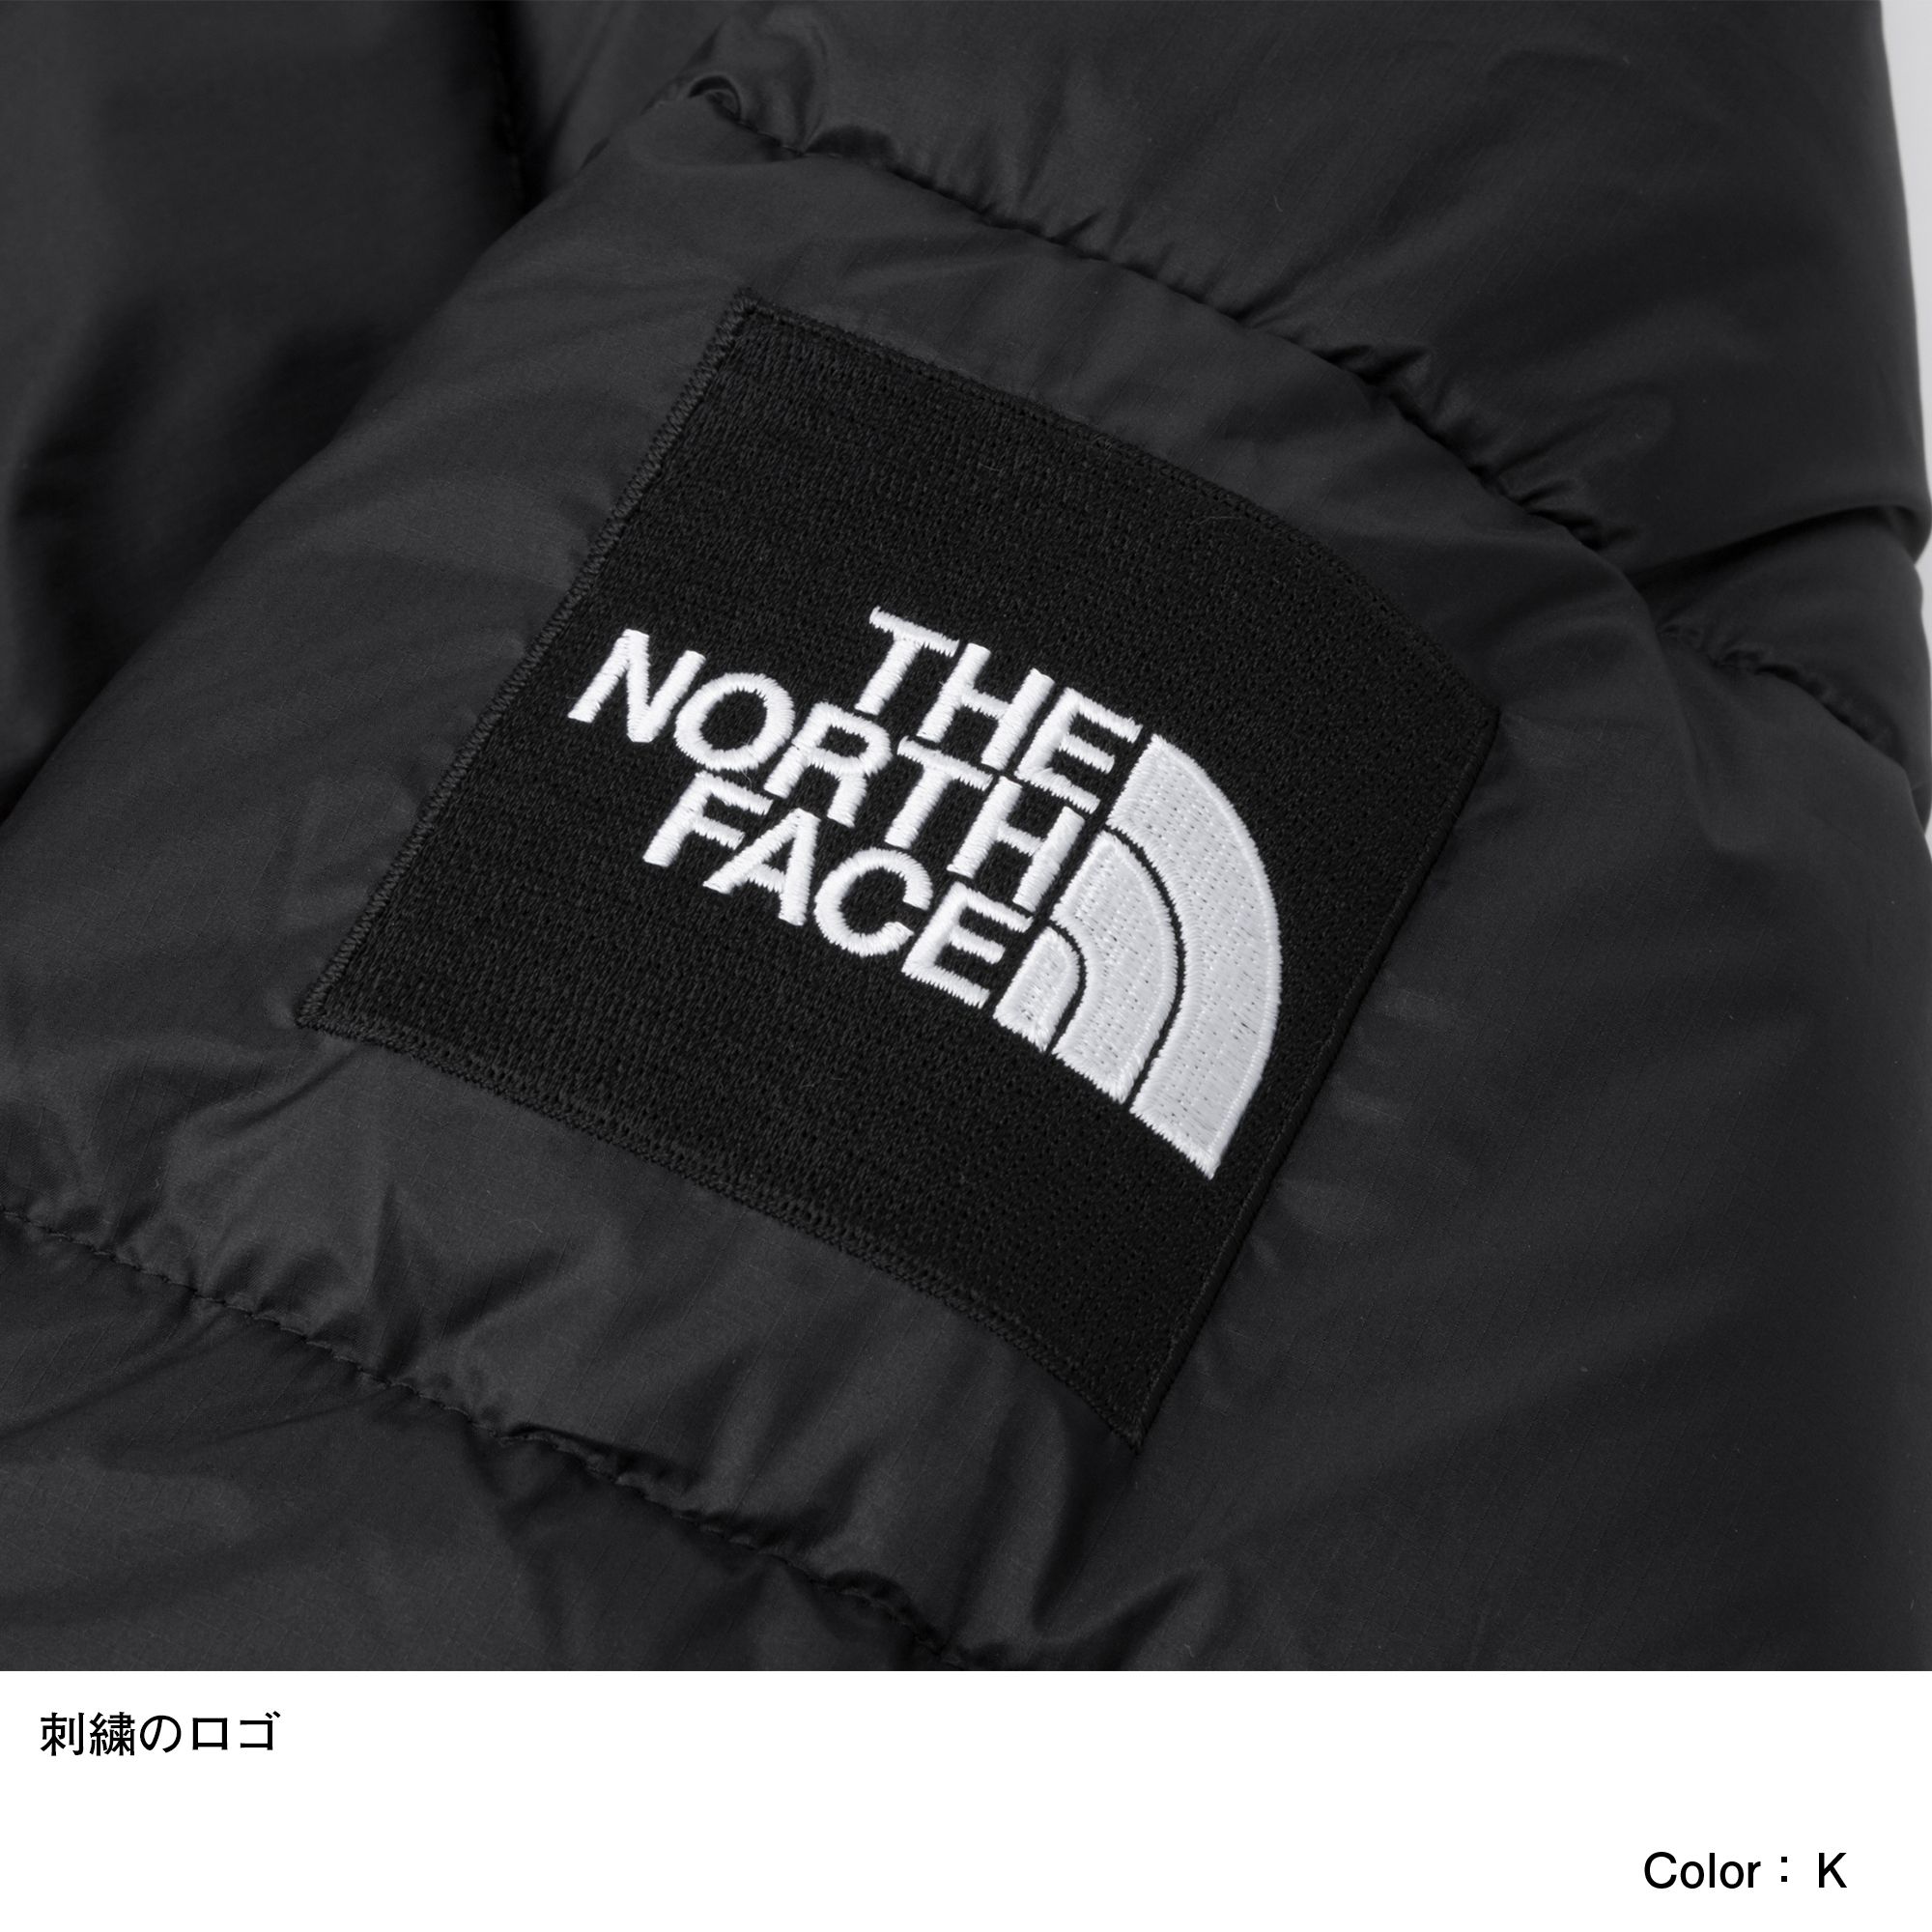 ラークスパージャケット メンズ Ny031 The North Face ザ ノース フェイス 公式通販